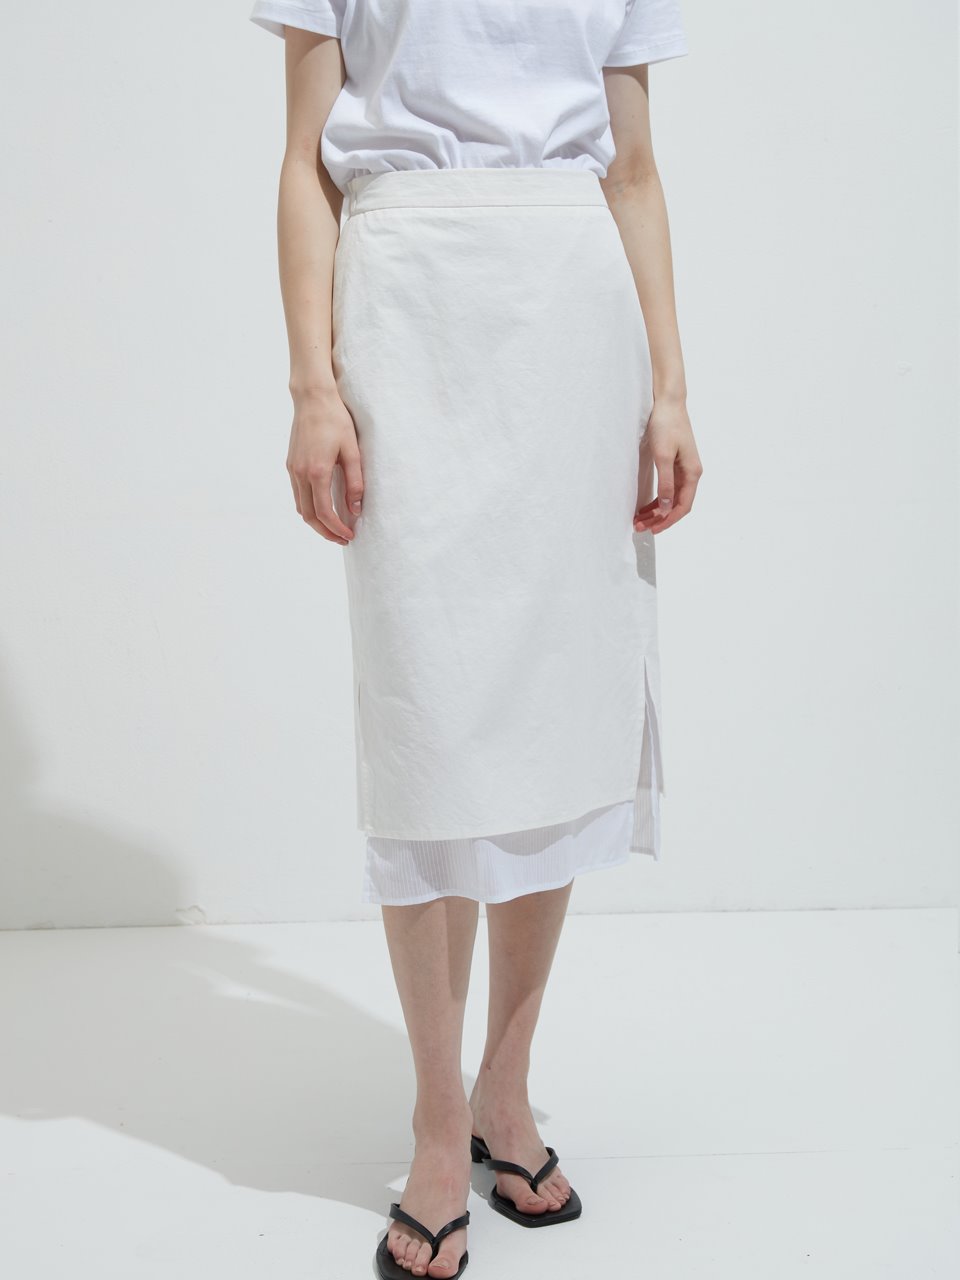 [REFURB SALE] Twofold linen skirt - White